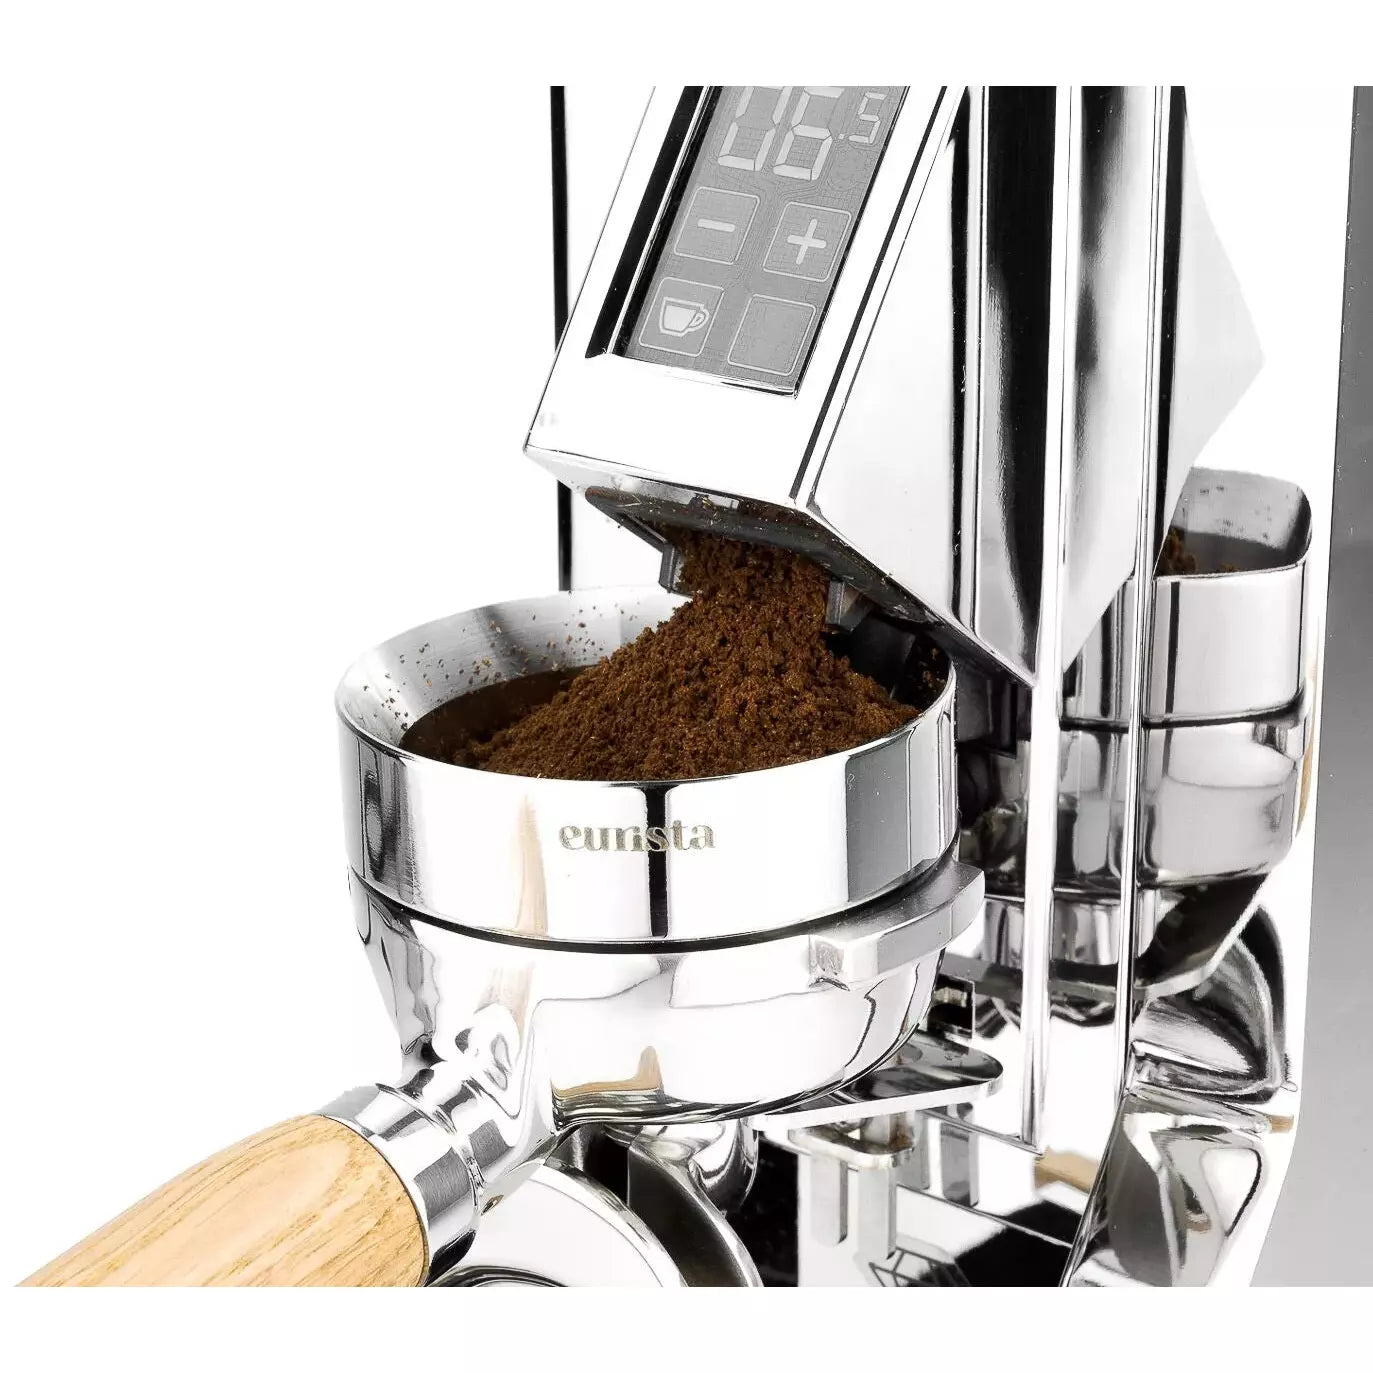 Eurista Funnel Mühlentrichter für Eureka New Mignon - Durchtampbar auch für 58,5 mm Dosierring Eurista    - Rheinland.Coffee